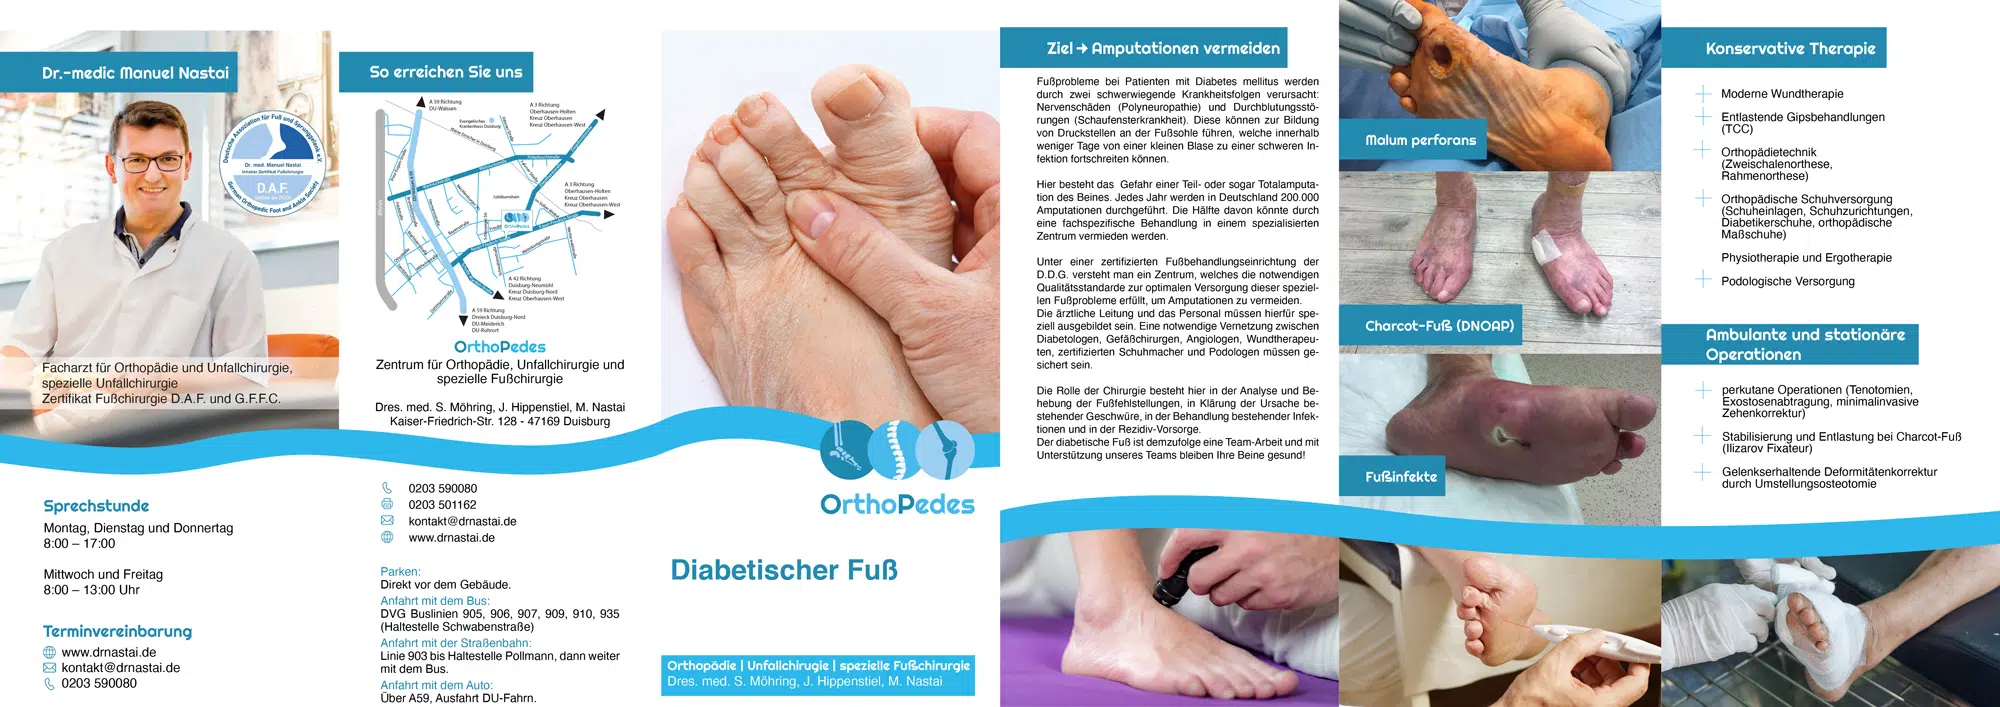 Flyer Diabetischer Fuß OrthoPedes